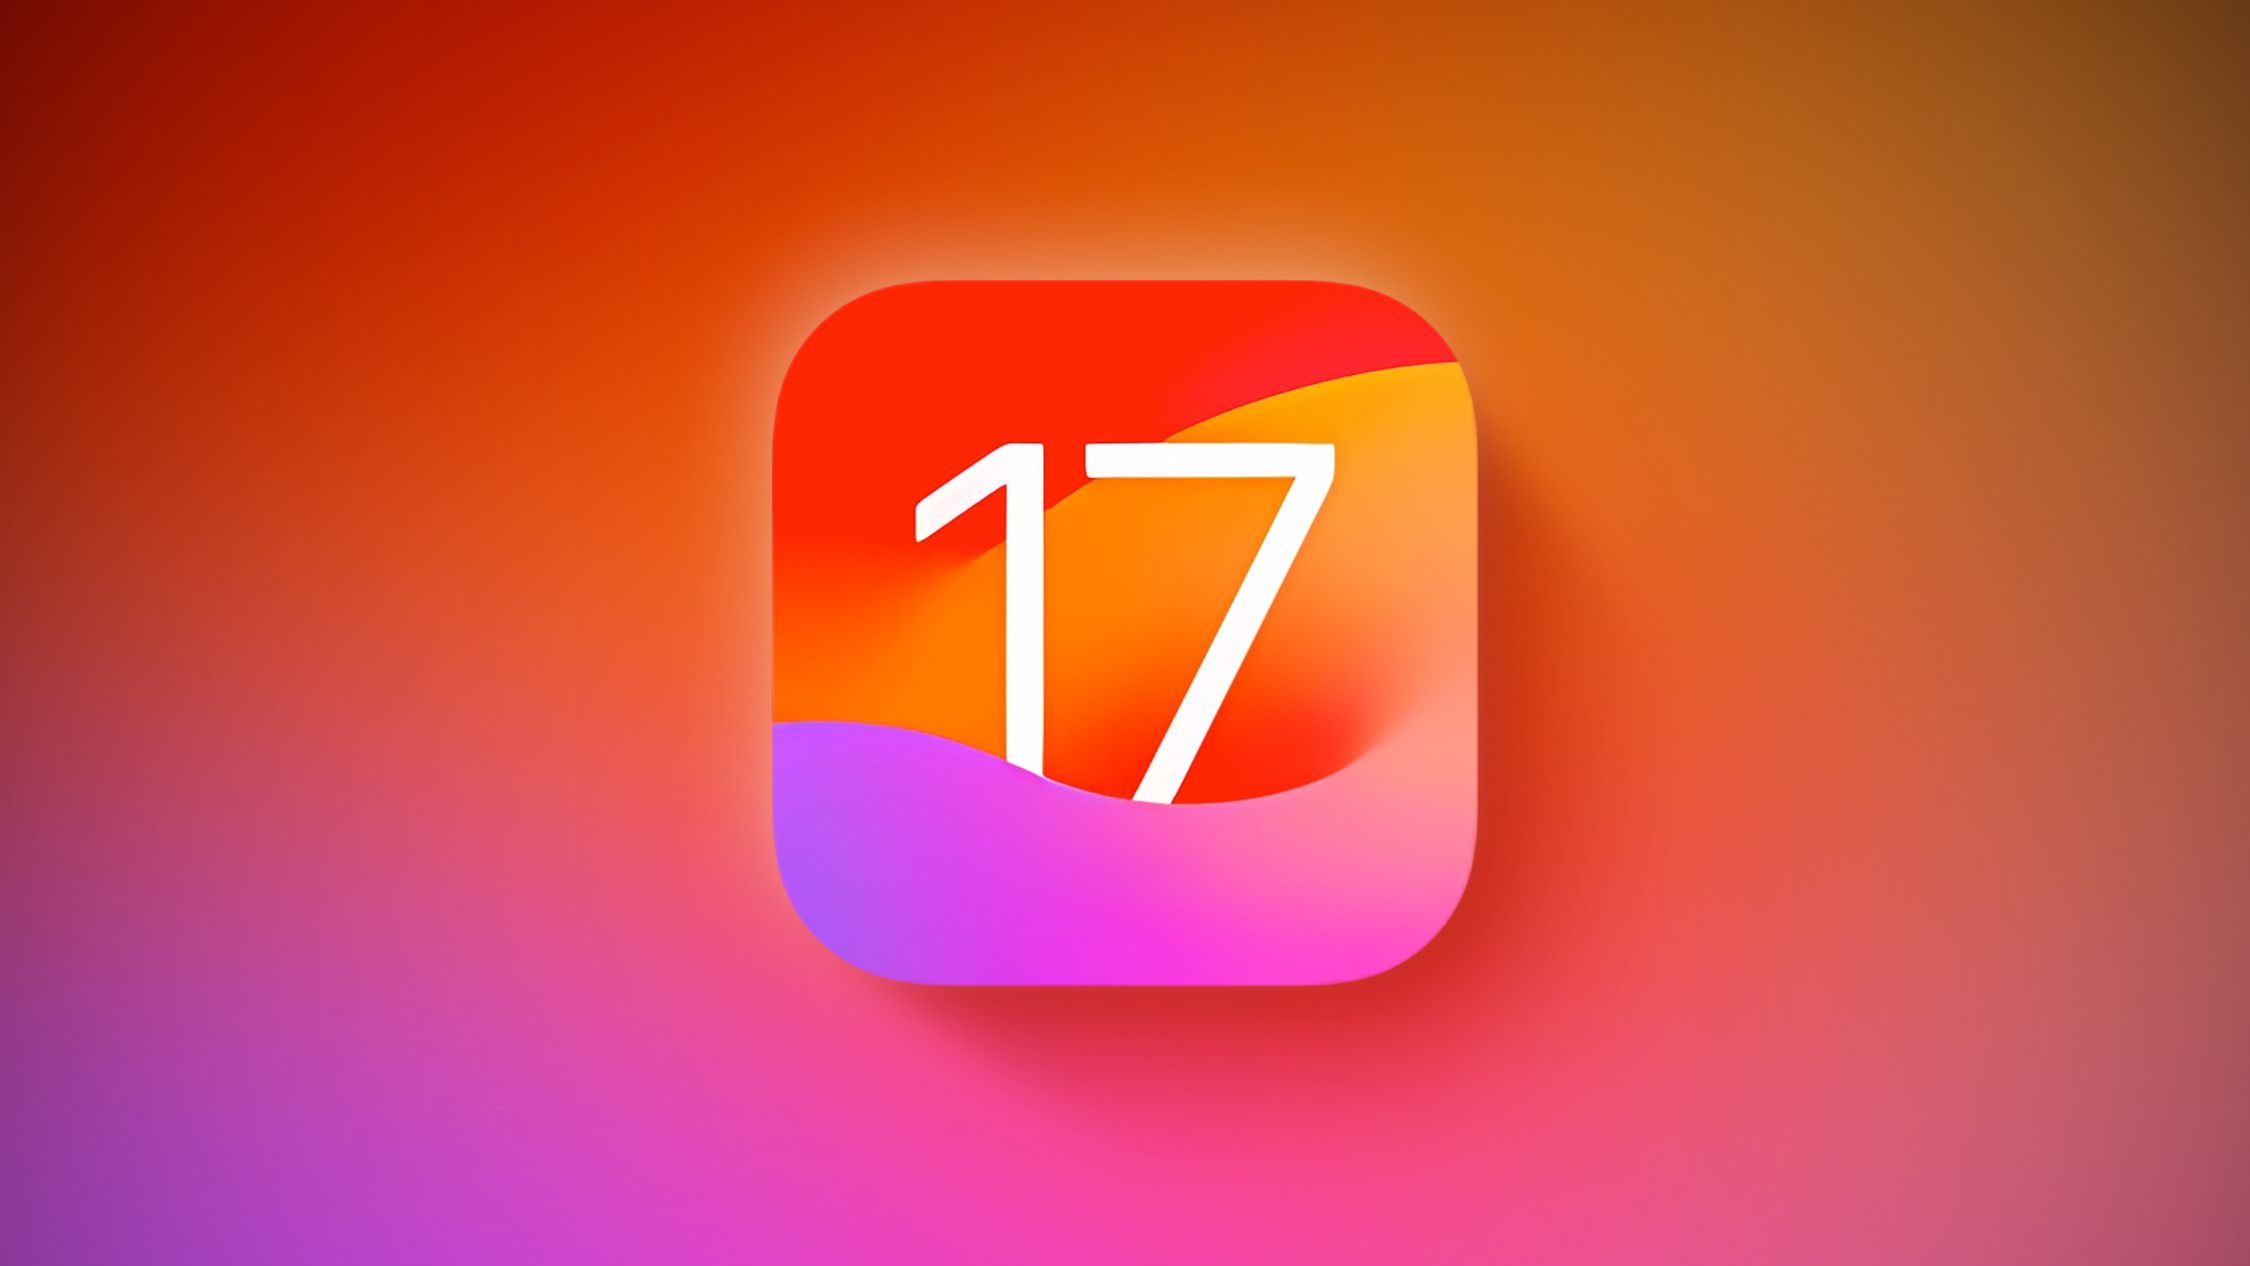 iOS 17 akan diluncurkan besok untuk iPhone dengan 10 fitur baru ini